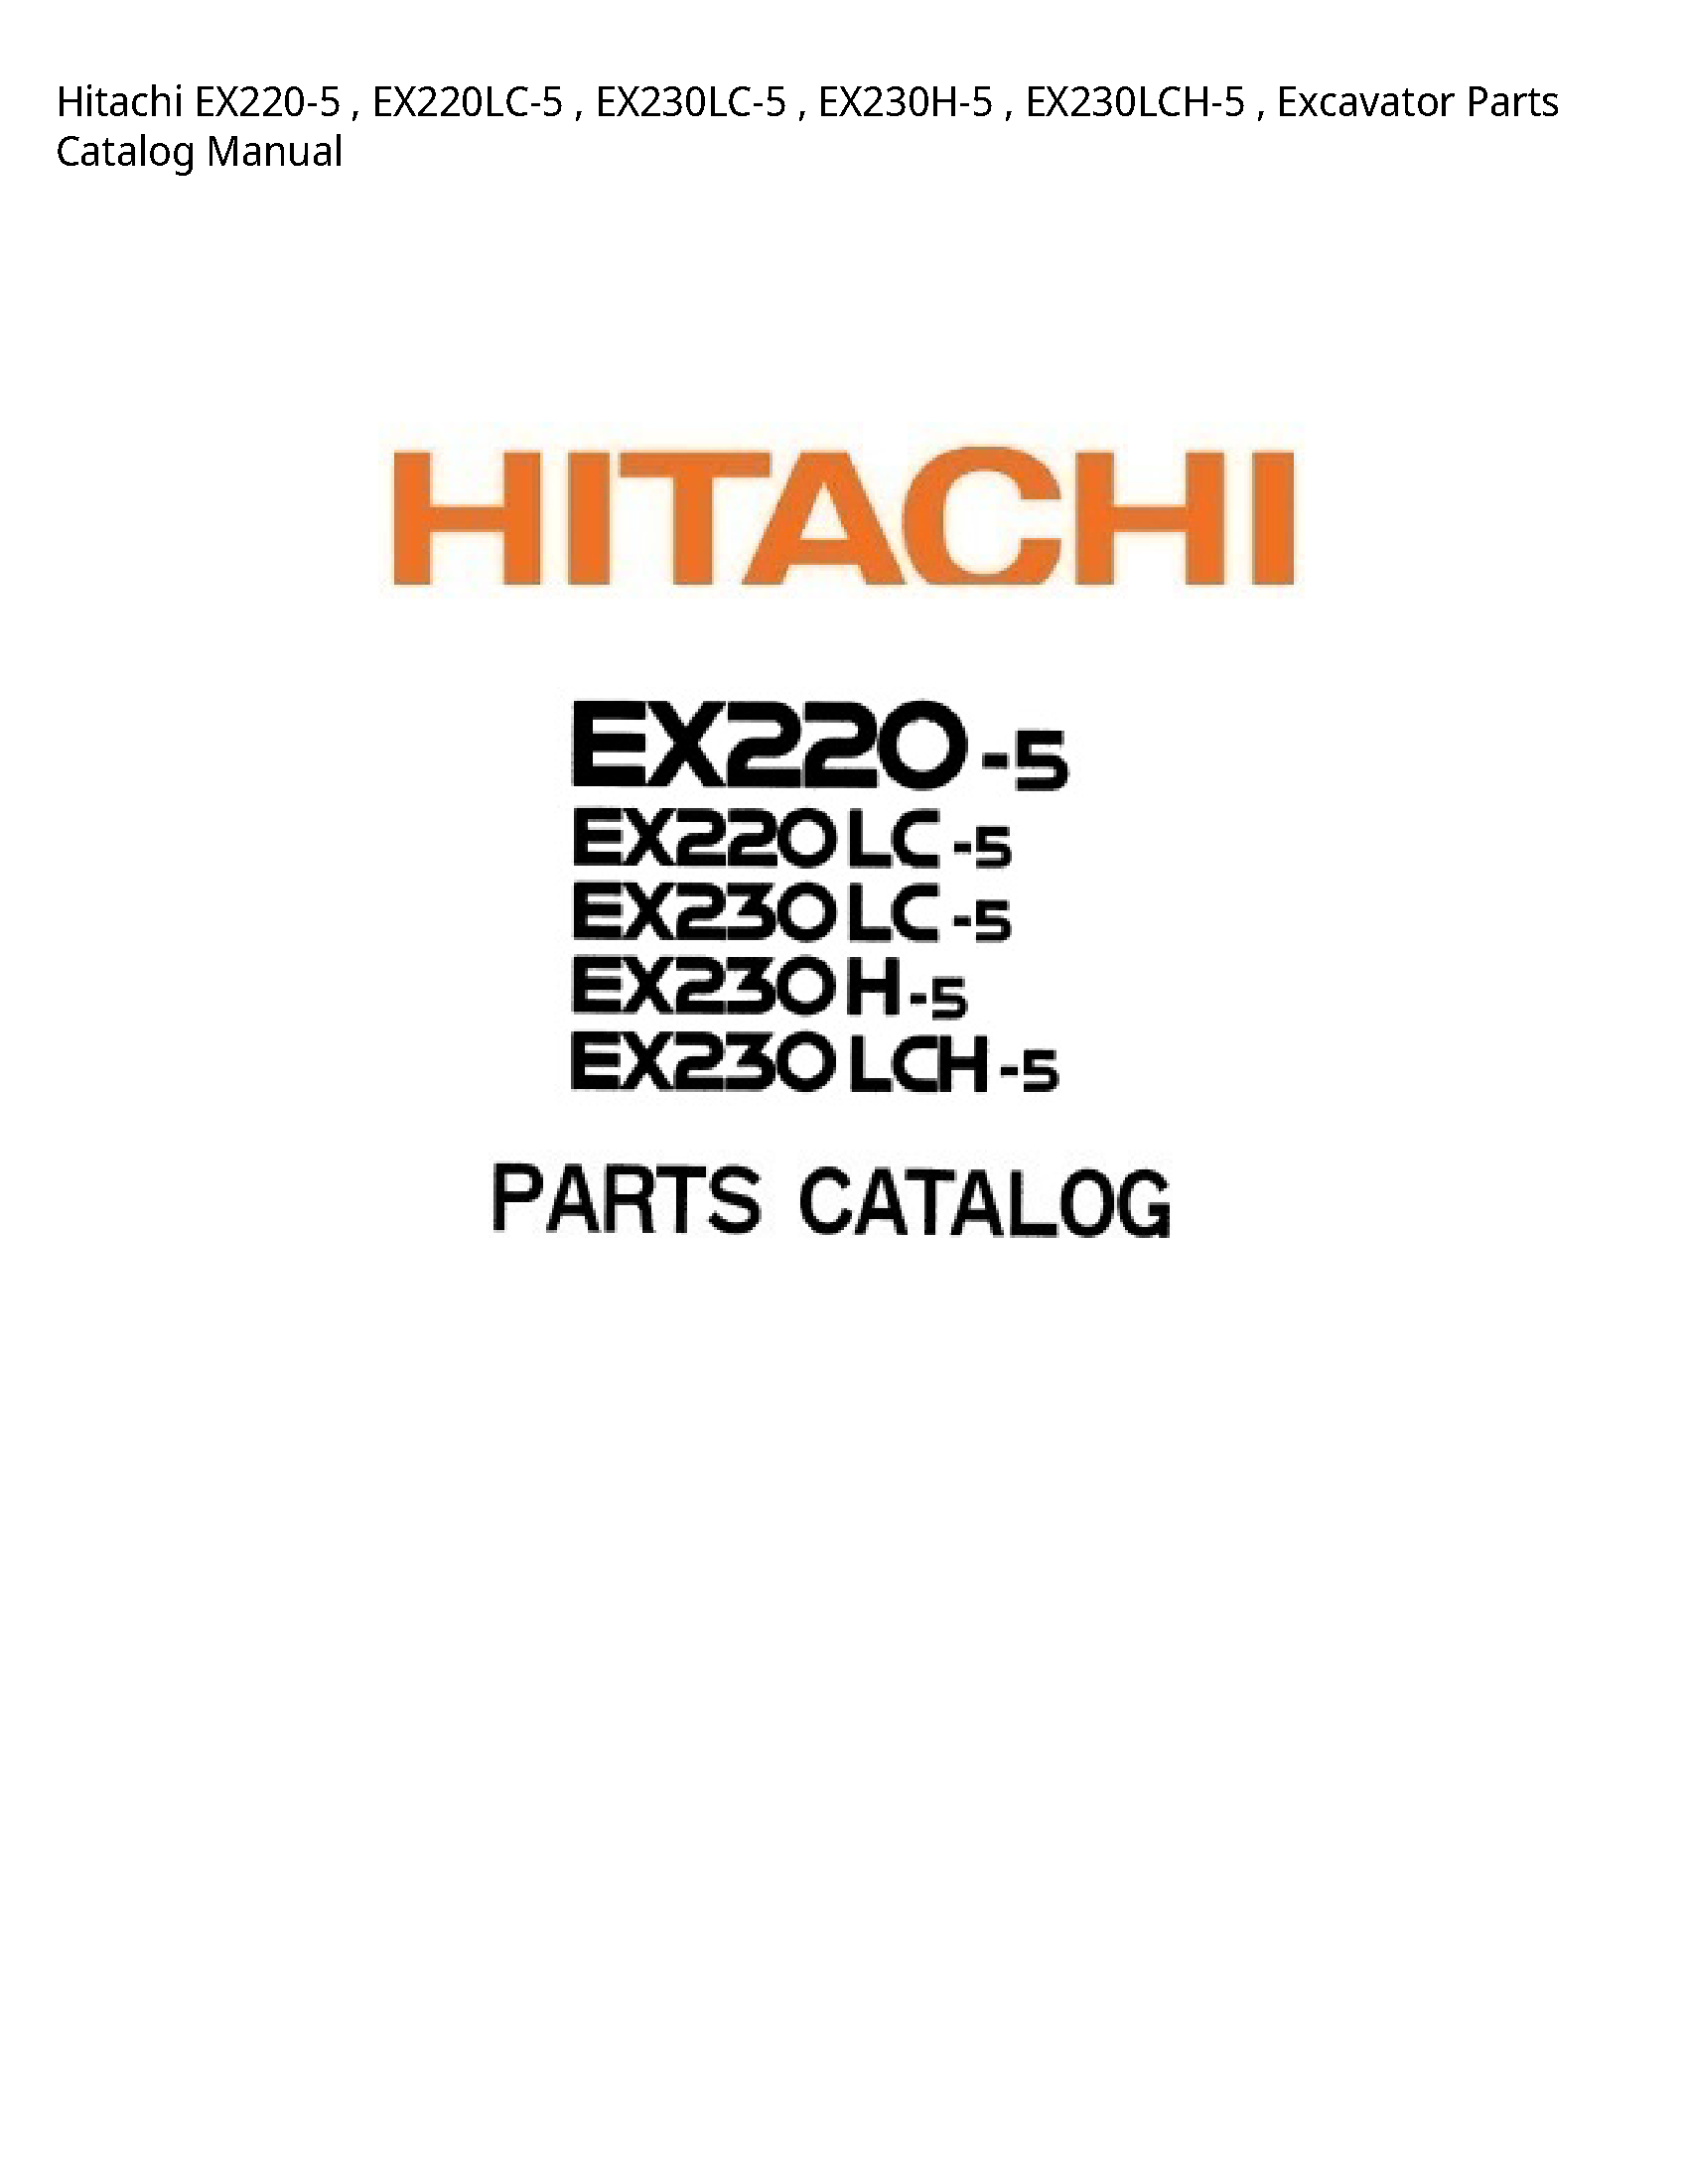 Hitachi EX220-5 Excavator Parts Catalog manual